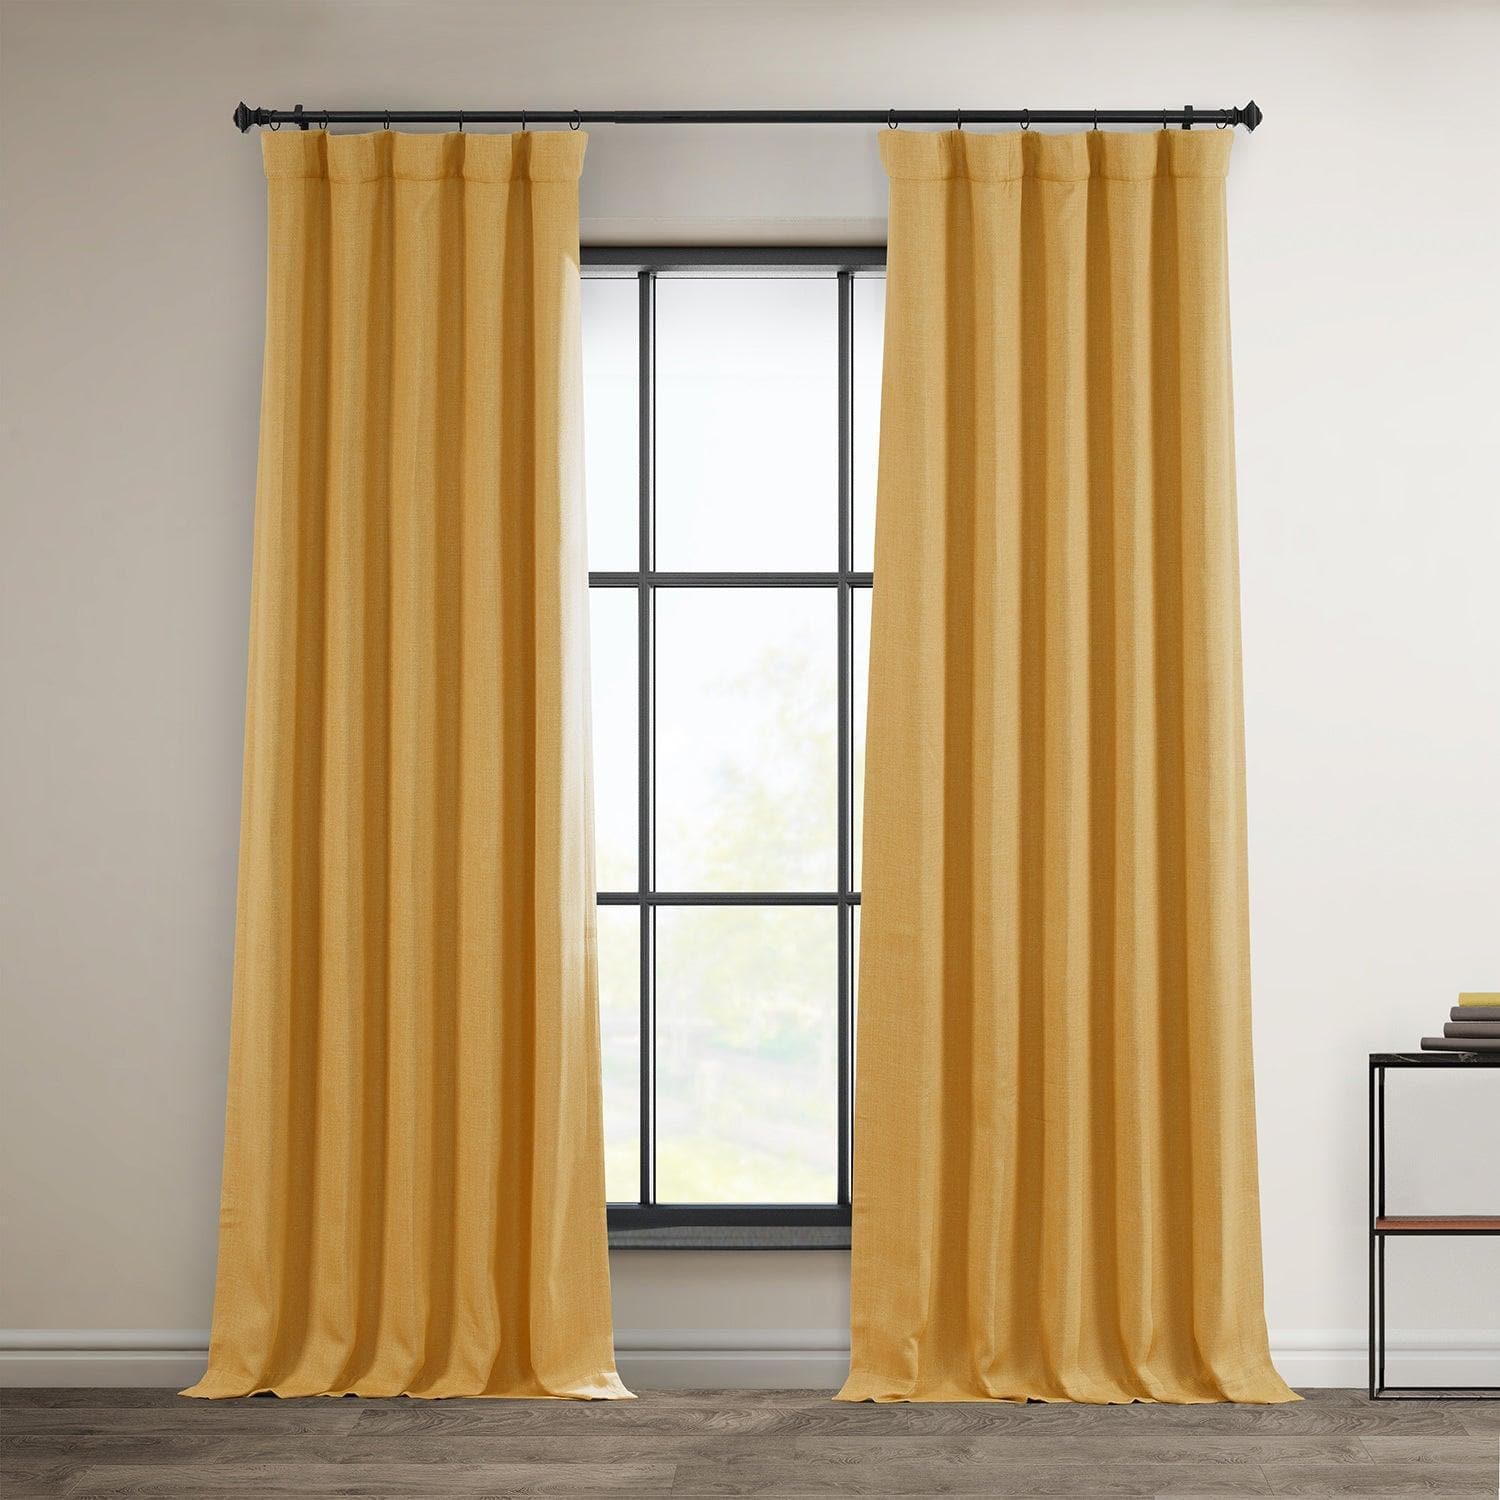 Dandelion Gold Textured Faux Linen Room Darkening Curtain